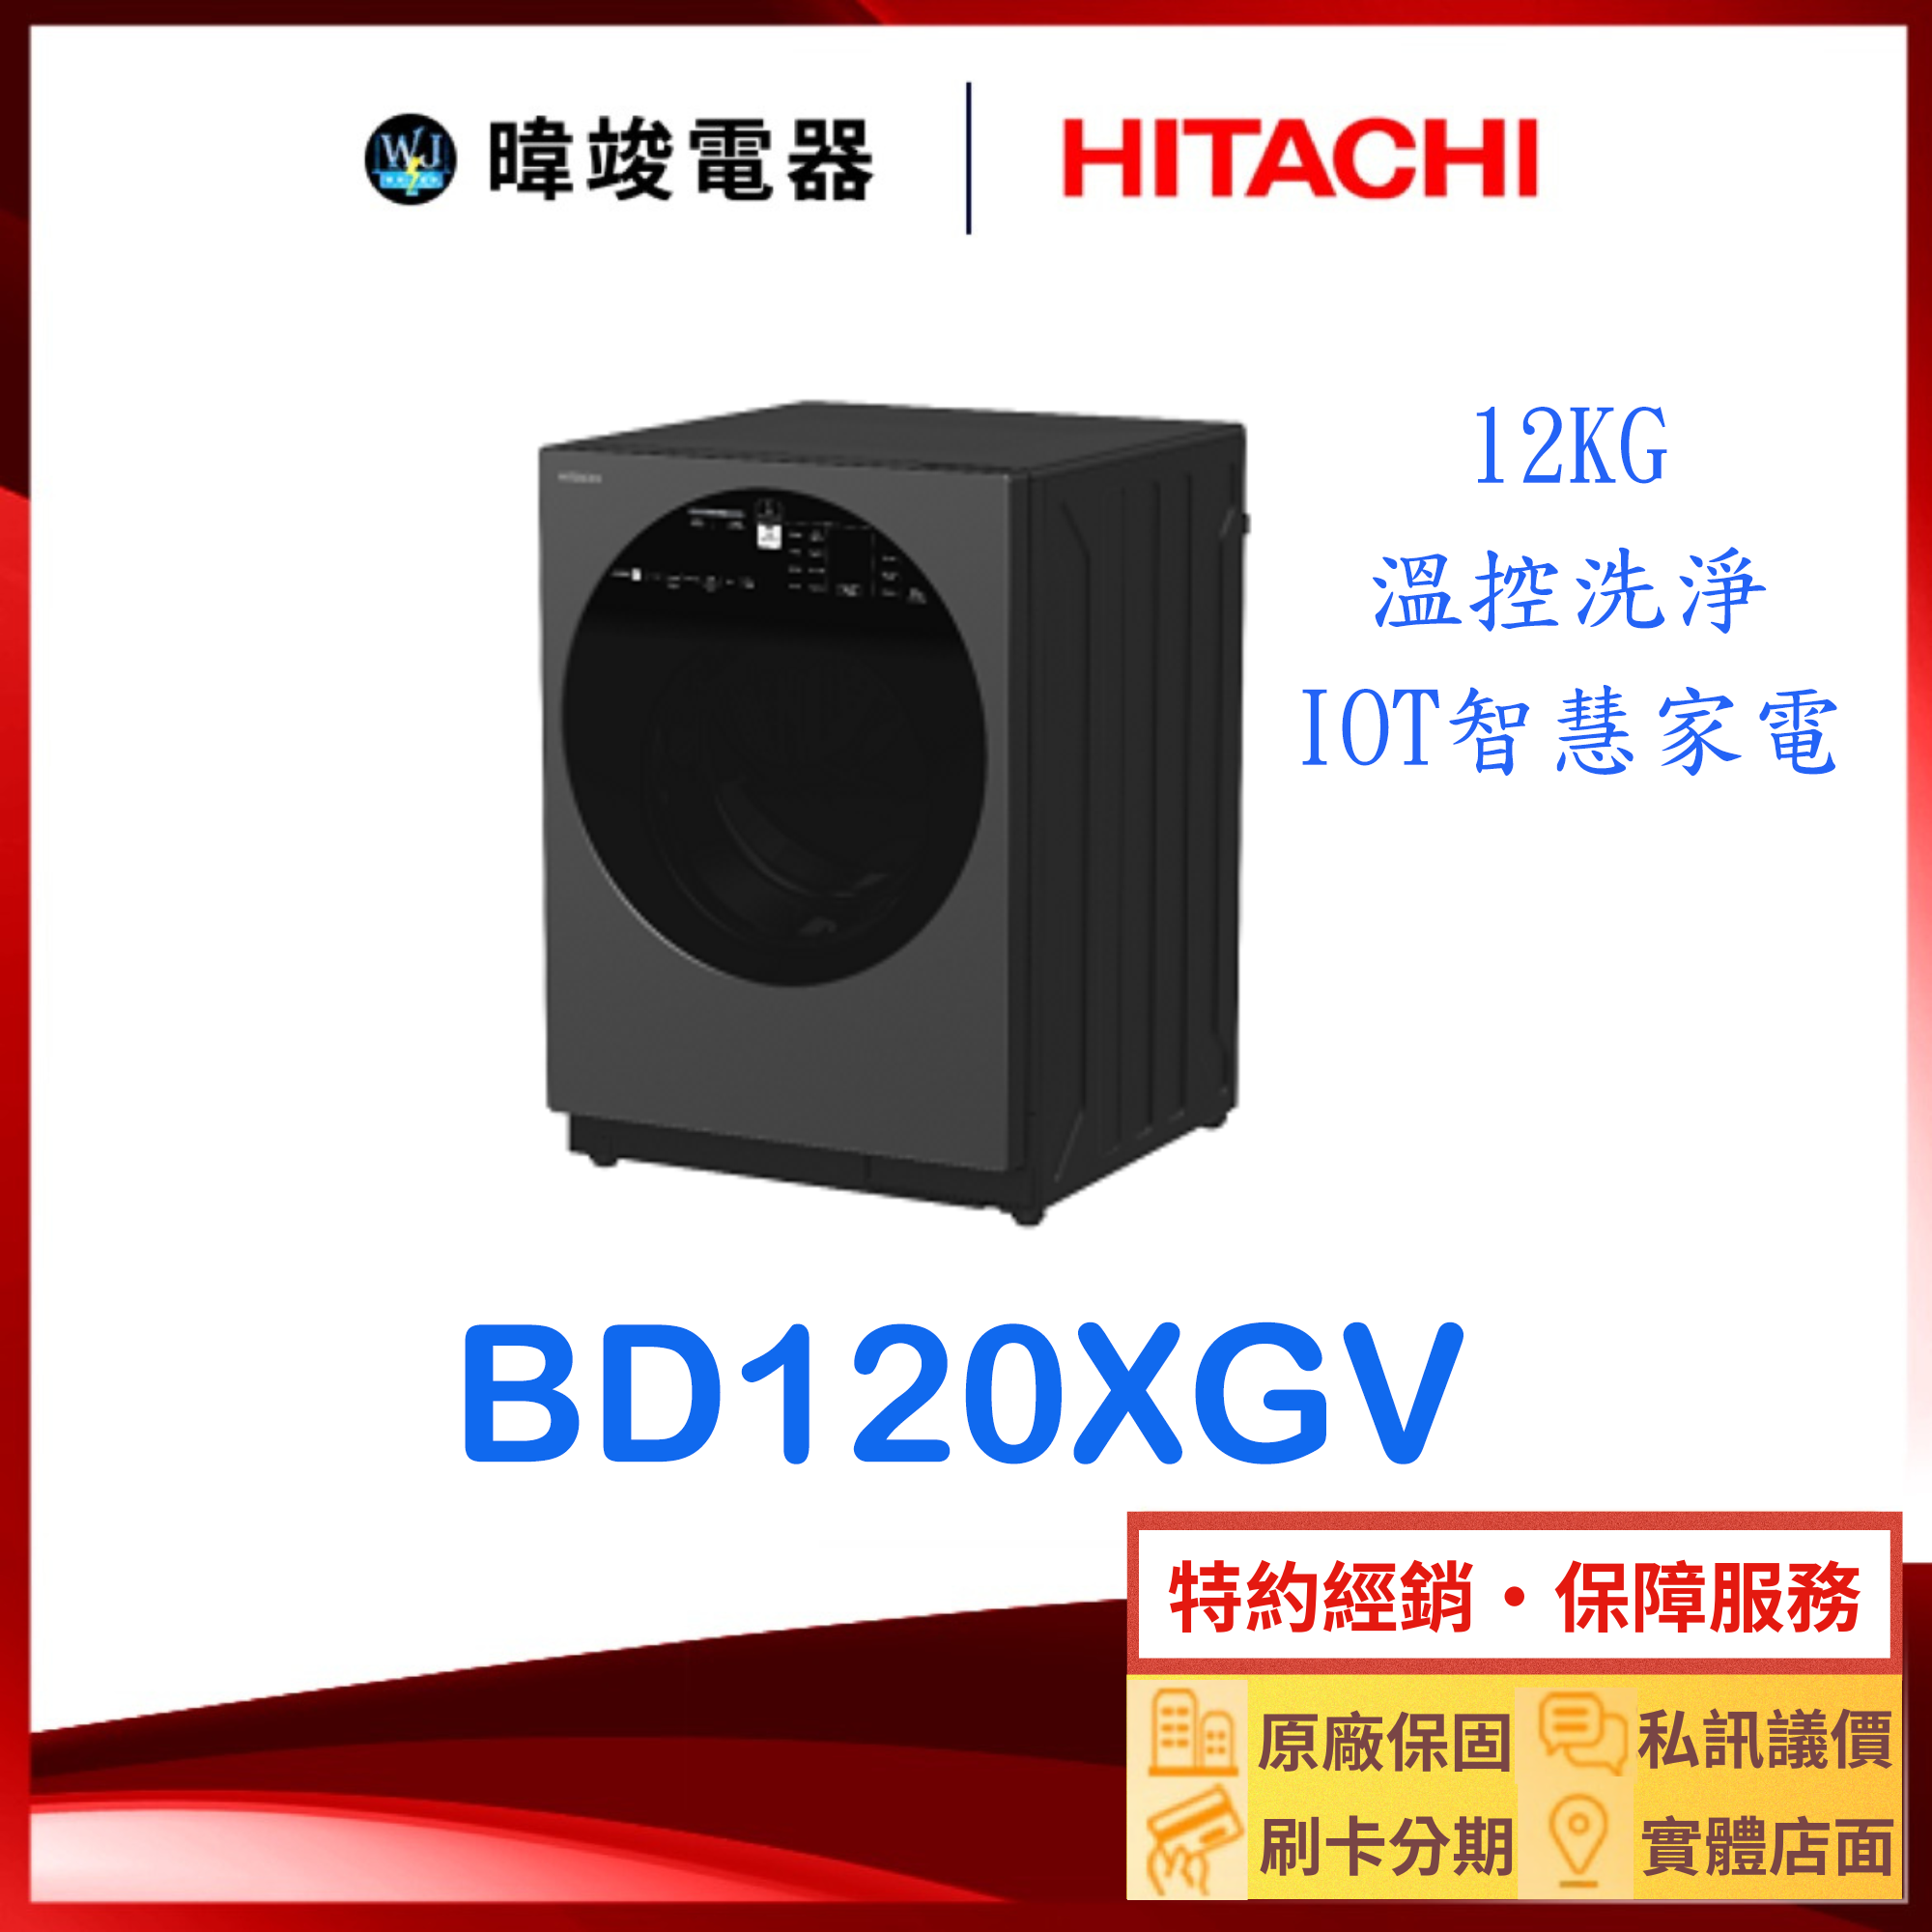 現貨【獨家折扣】HITACHI 日立 BD120XGV 滾筒式洗衣機 矮版設計 BD-120XGV 遠端操控 溫水洗衣機